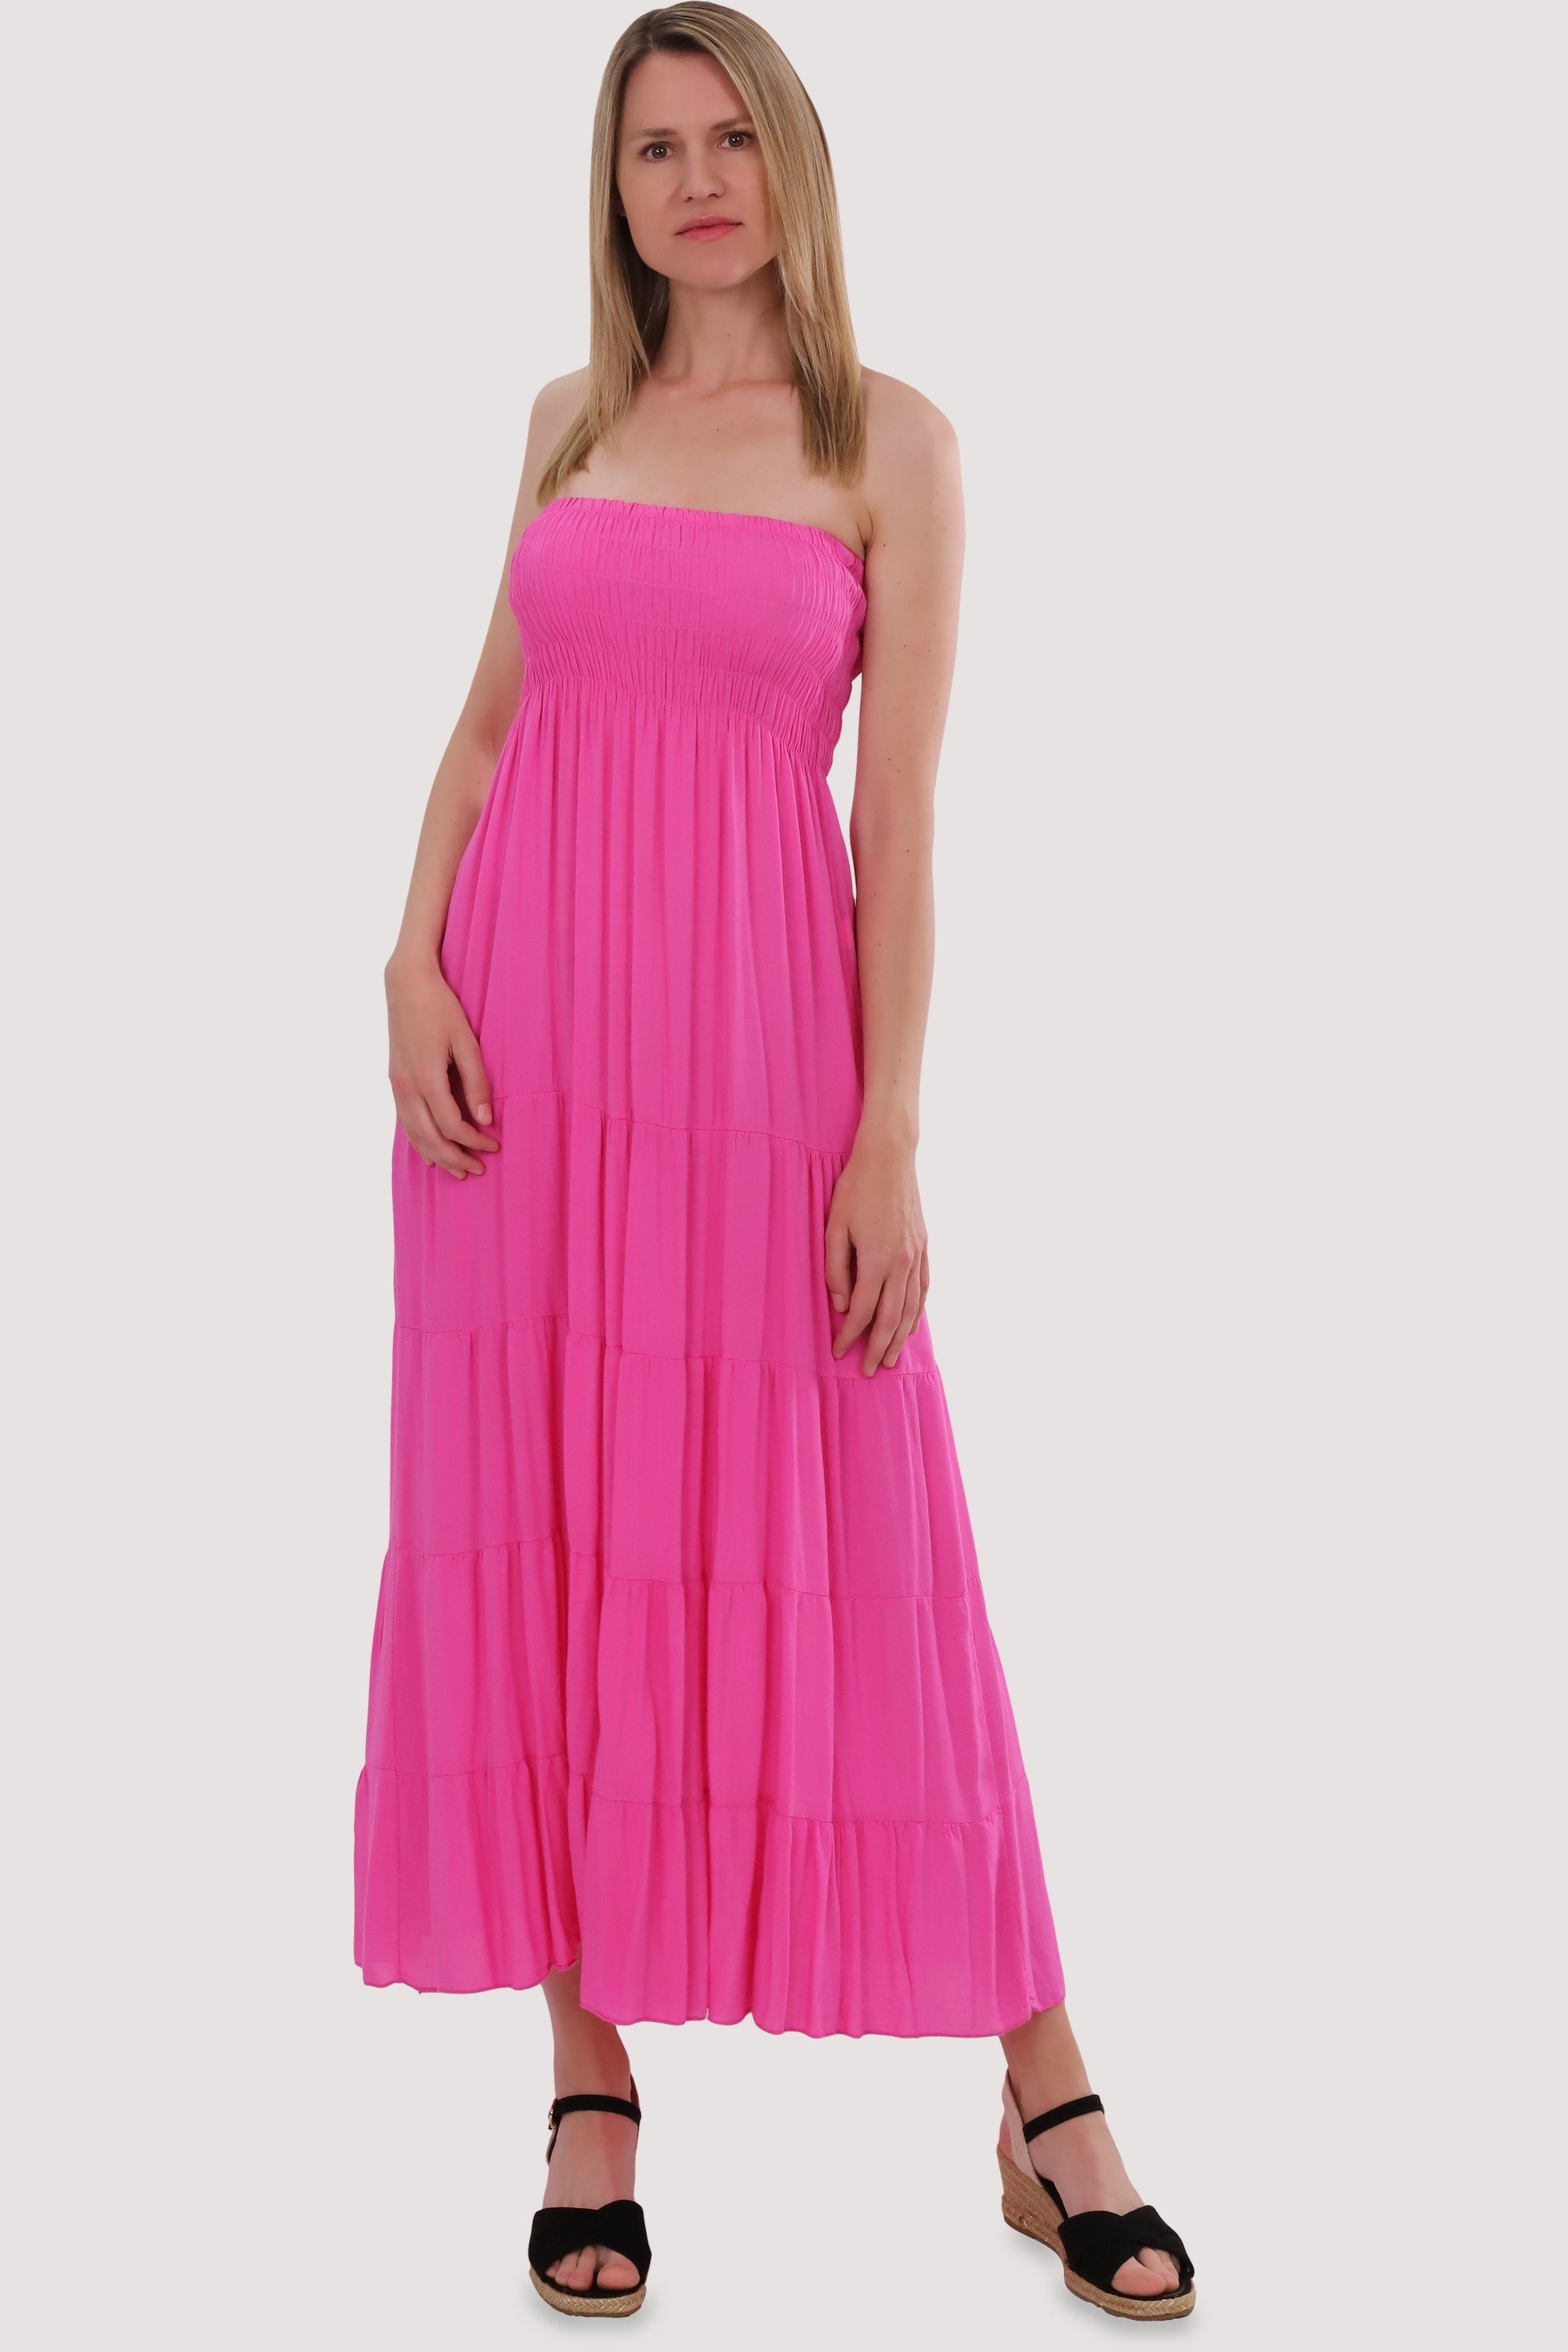 malito more than fashion Bandeaukleid 4635 Einheitsgröße figurumspielendes Sommerkleid rosa Strandkleid